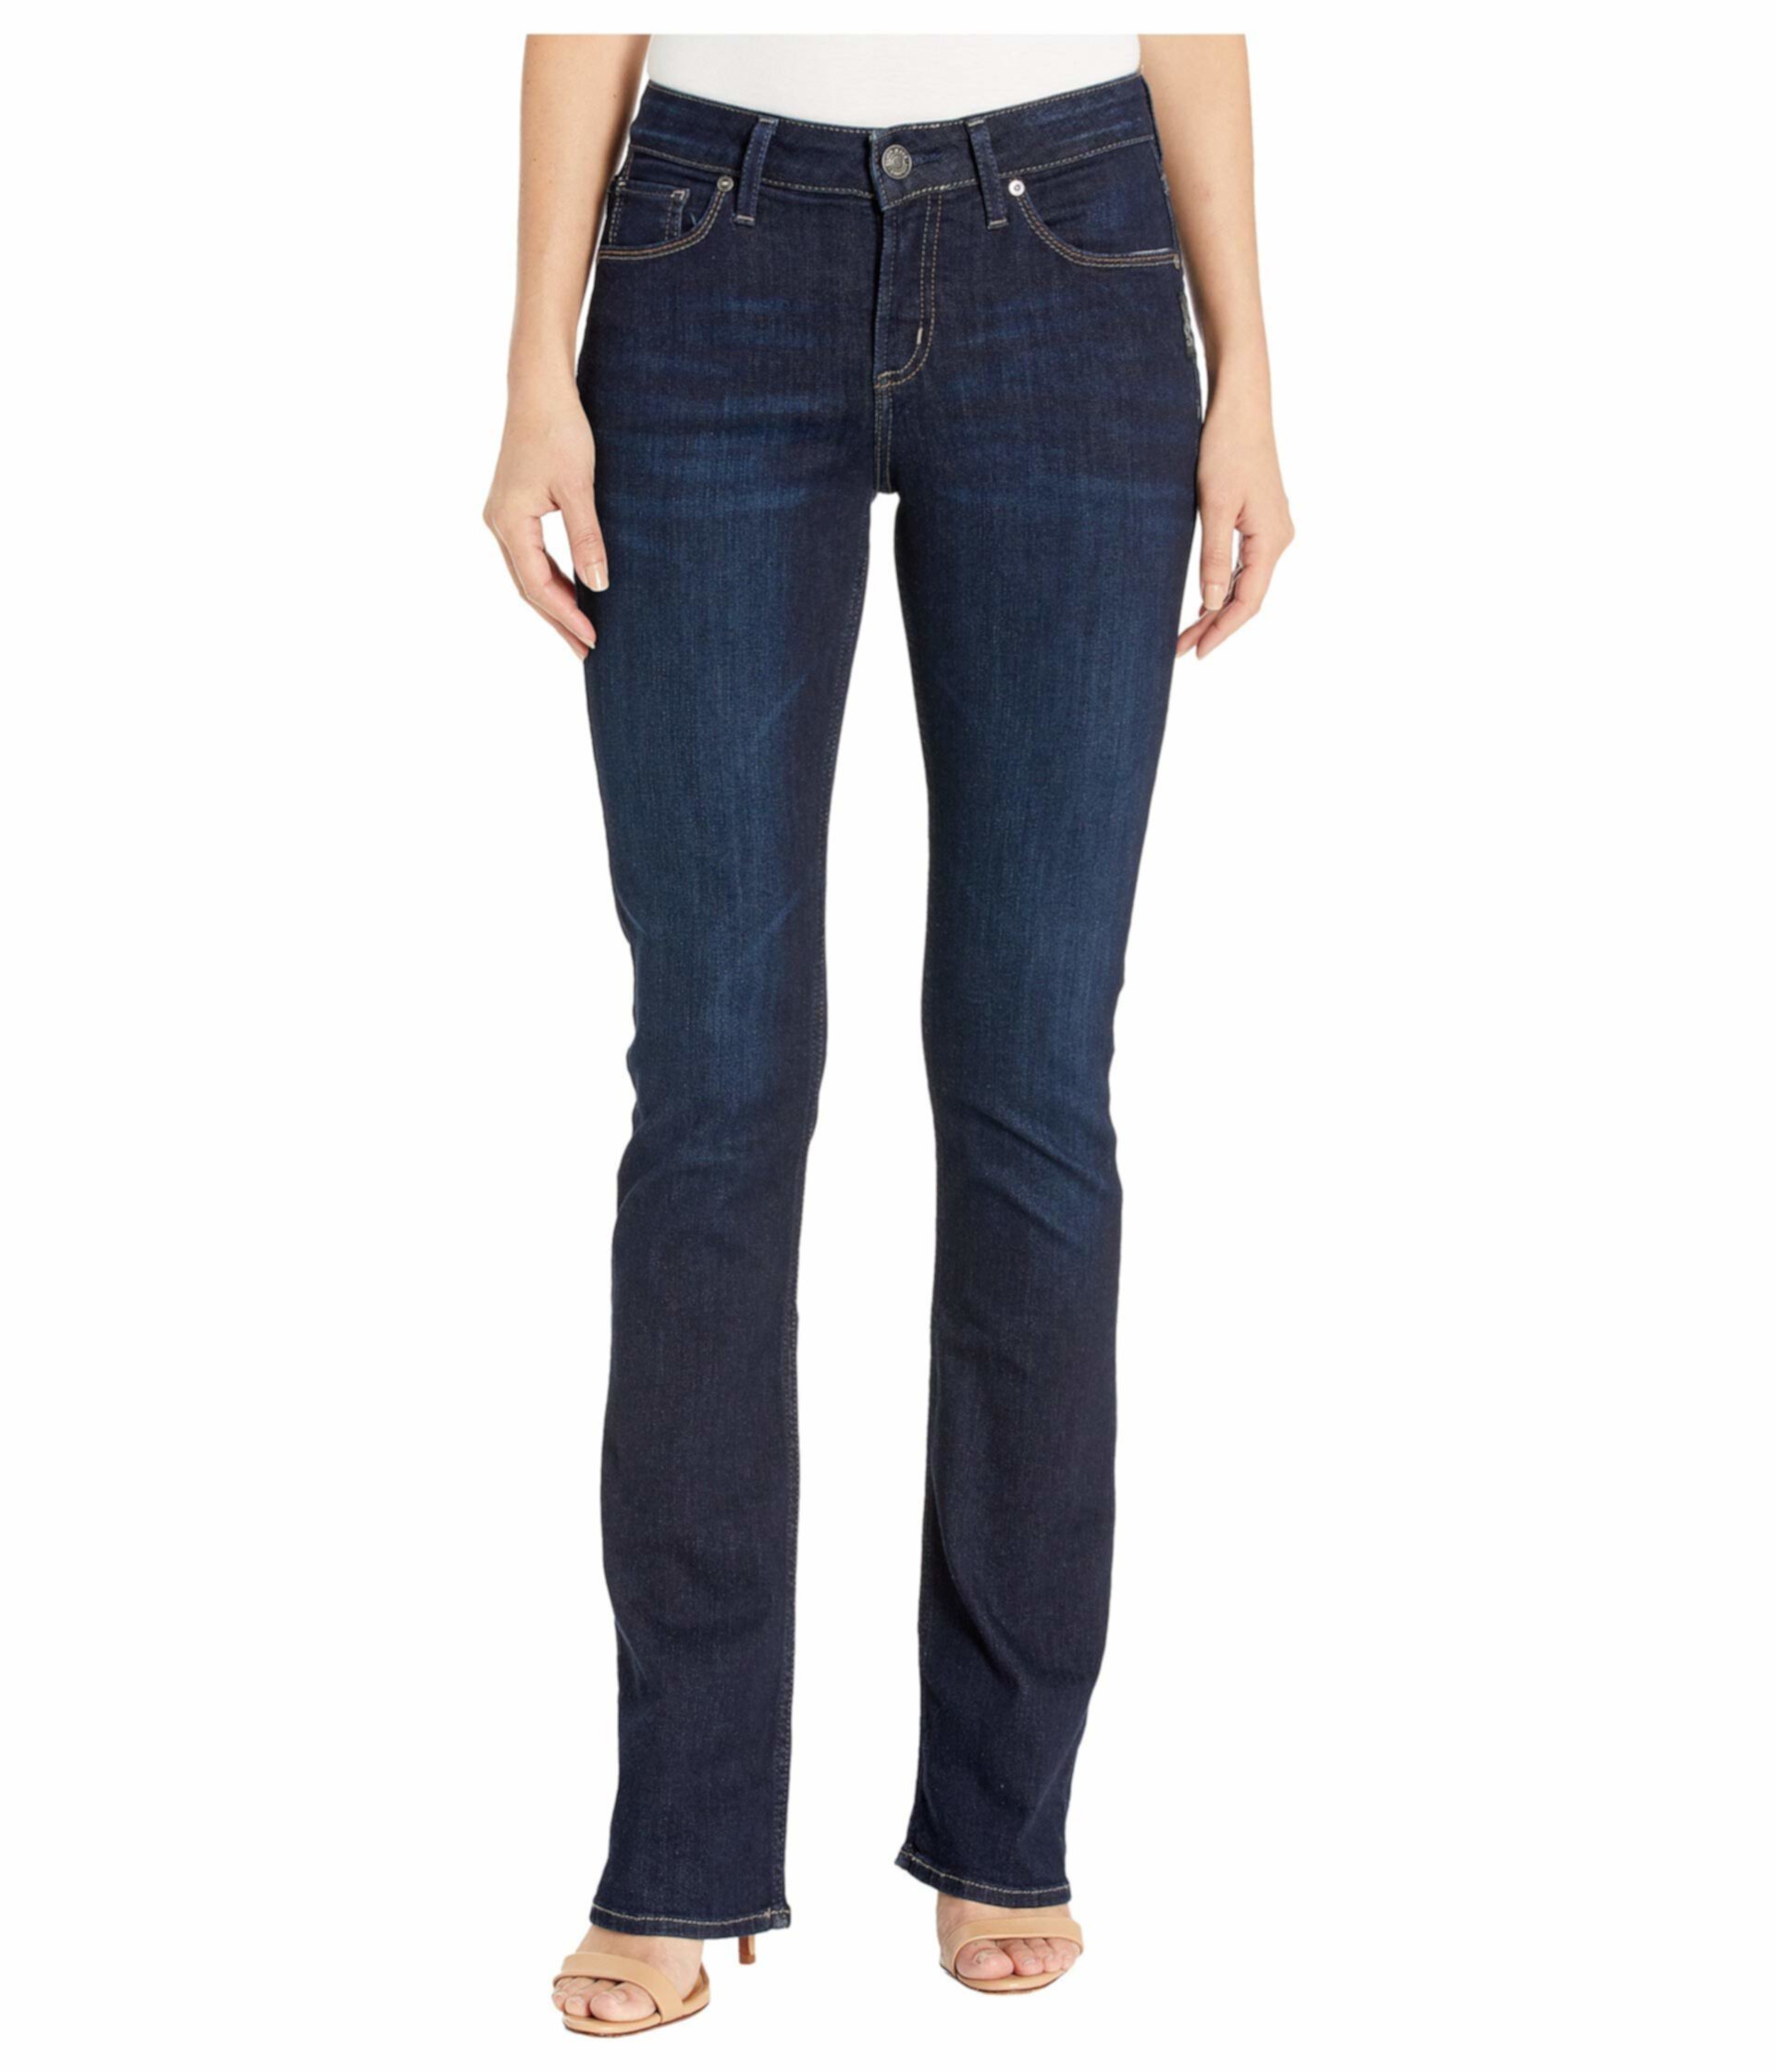 Узкие зауженные джинсы Avery с высокой посадкой в цвете Индиго Silver Jeans Co.